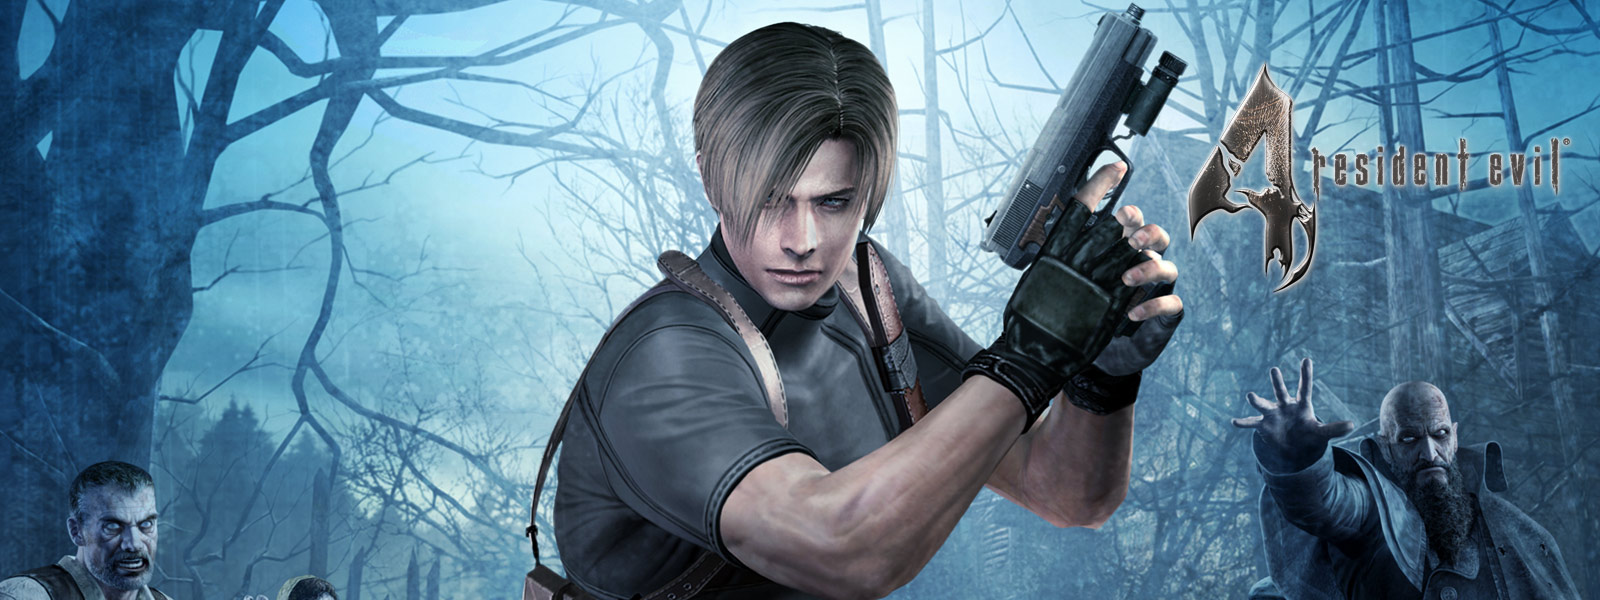 Resident Evil 4, postava s pištoľou v tmavom lese obkľúčená zombiami